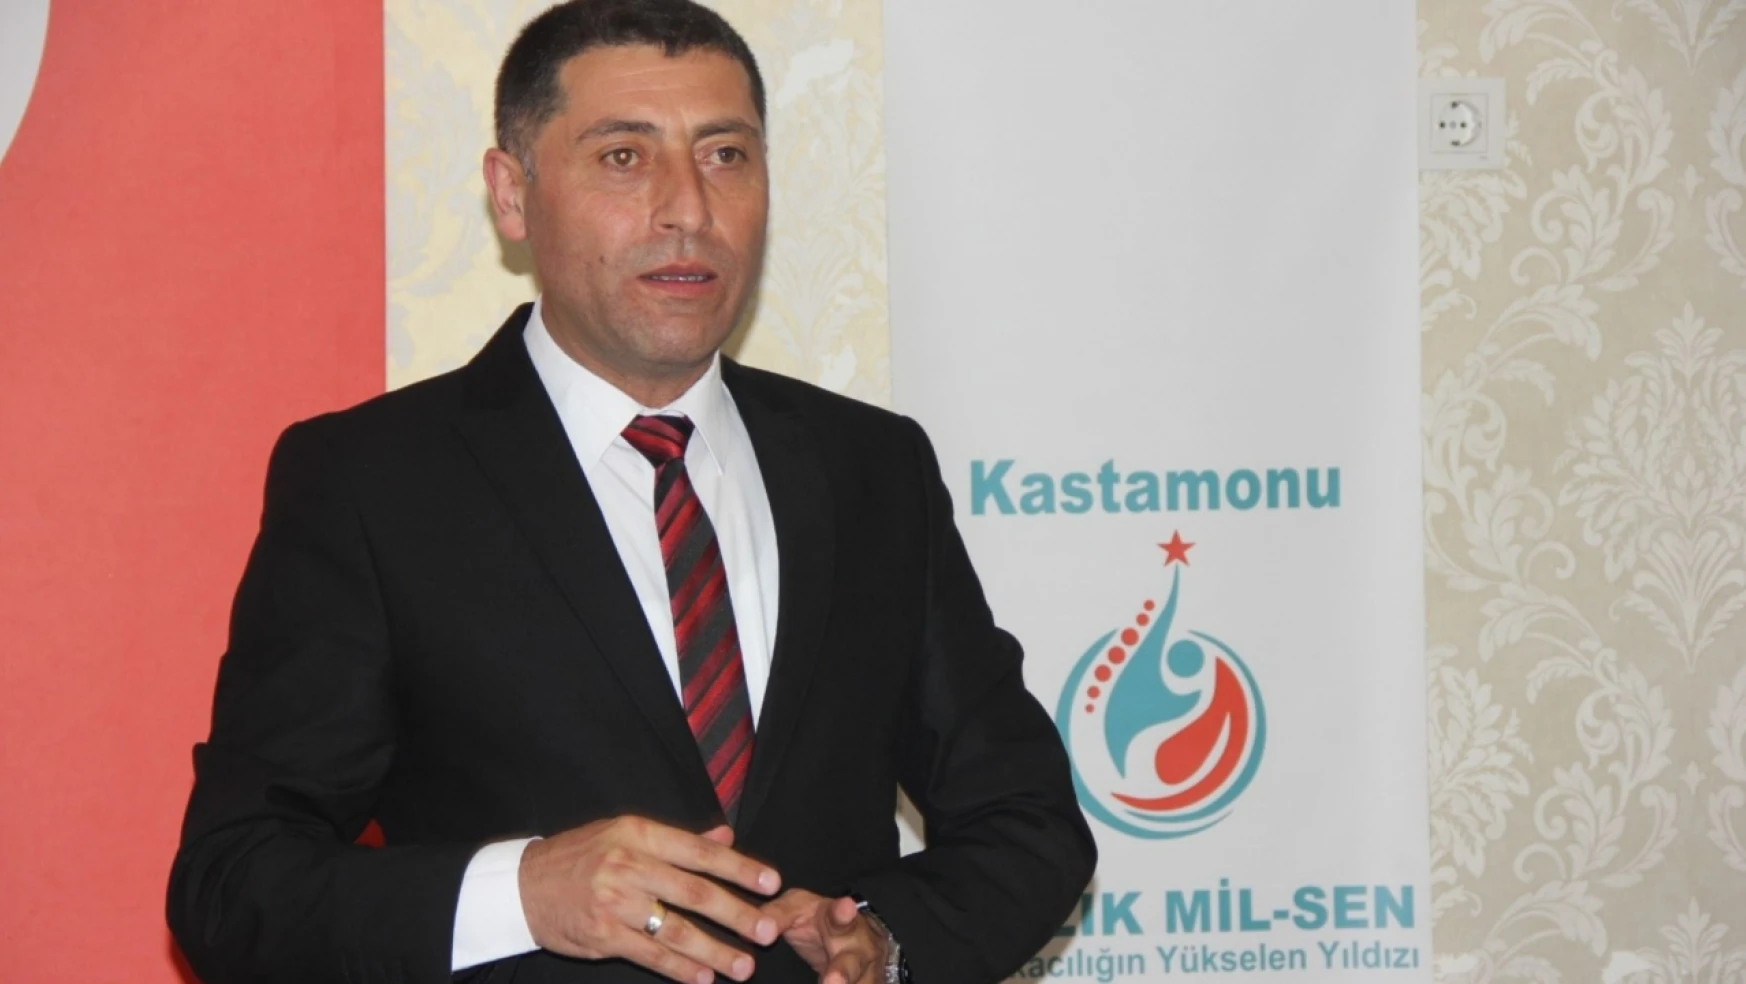 Kastamonu KAL-DER Başkanı Civelekoğlu: 'Yatırımı engelleyenlerin karşısındayız'